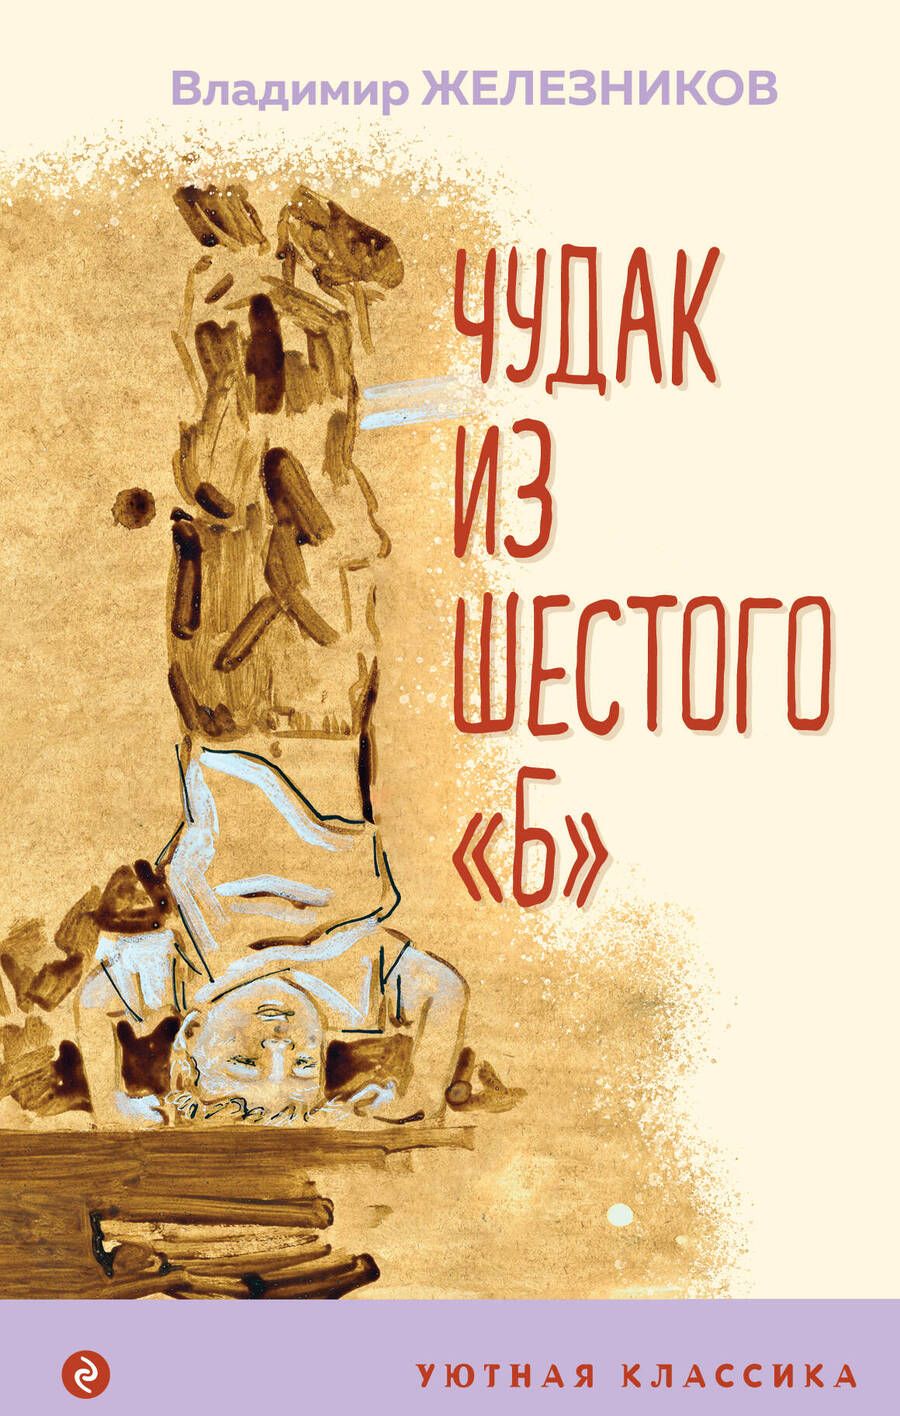 Обложка книги "Железников: Чудак из шестого "Б""